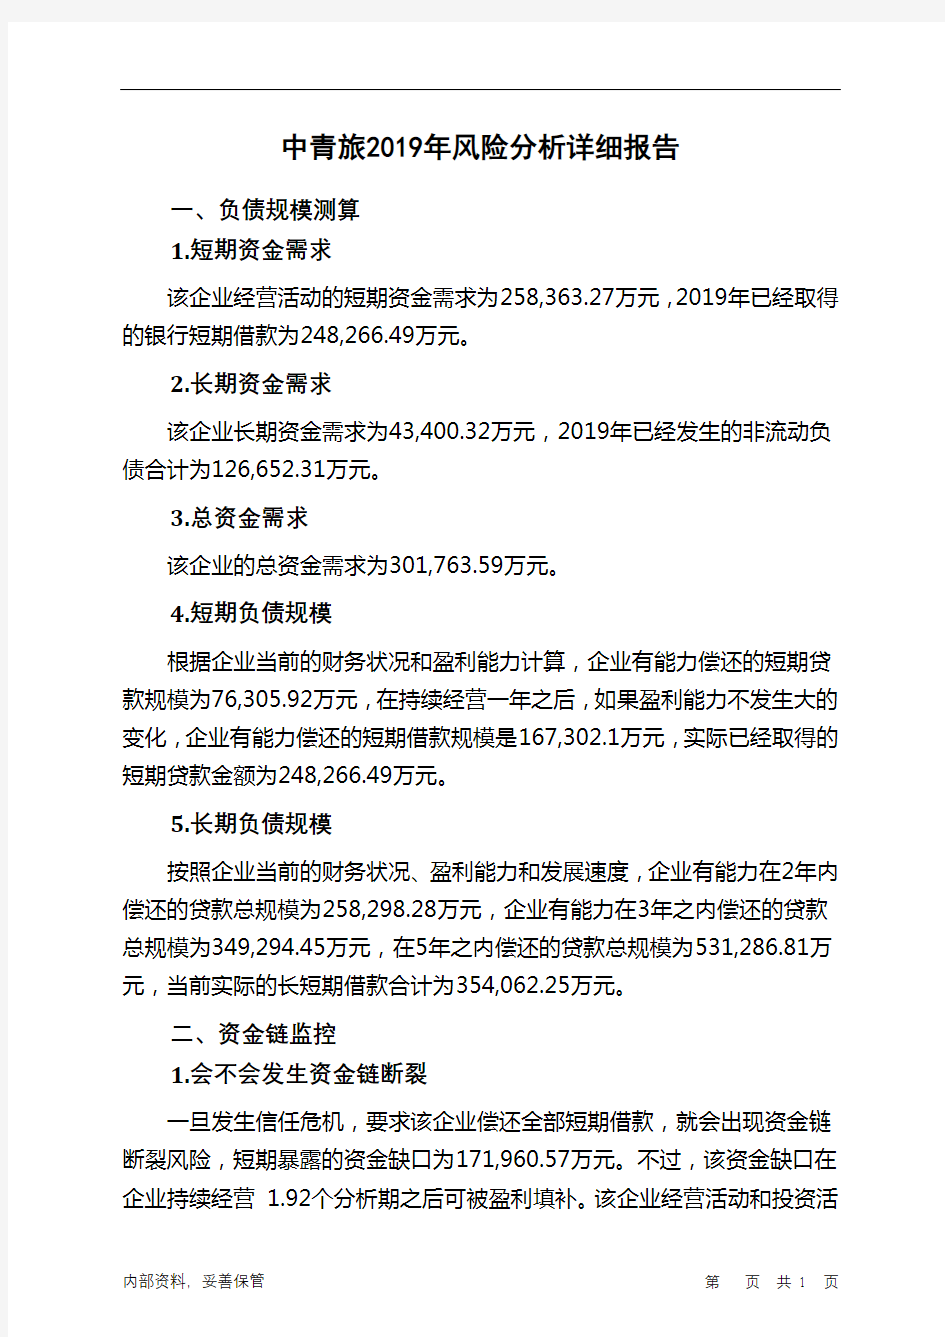 中青旅2019年财务风险分析详细报告